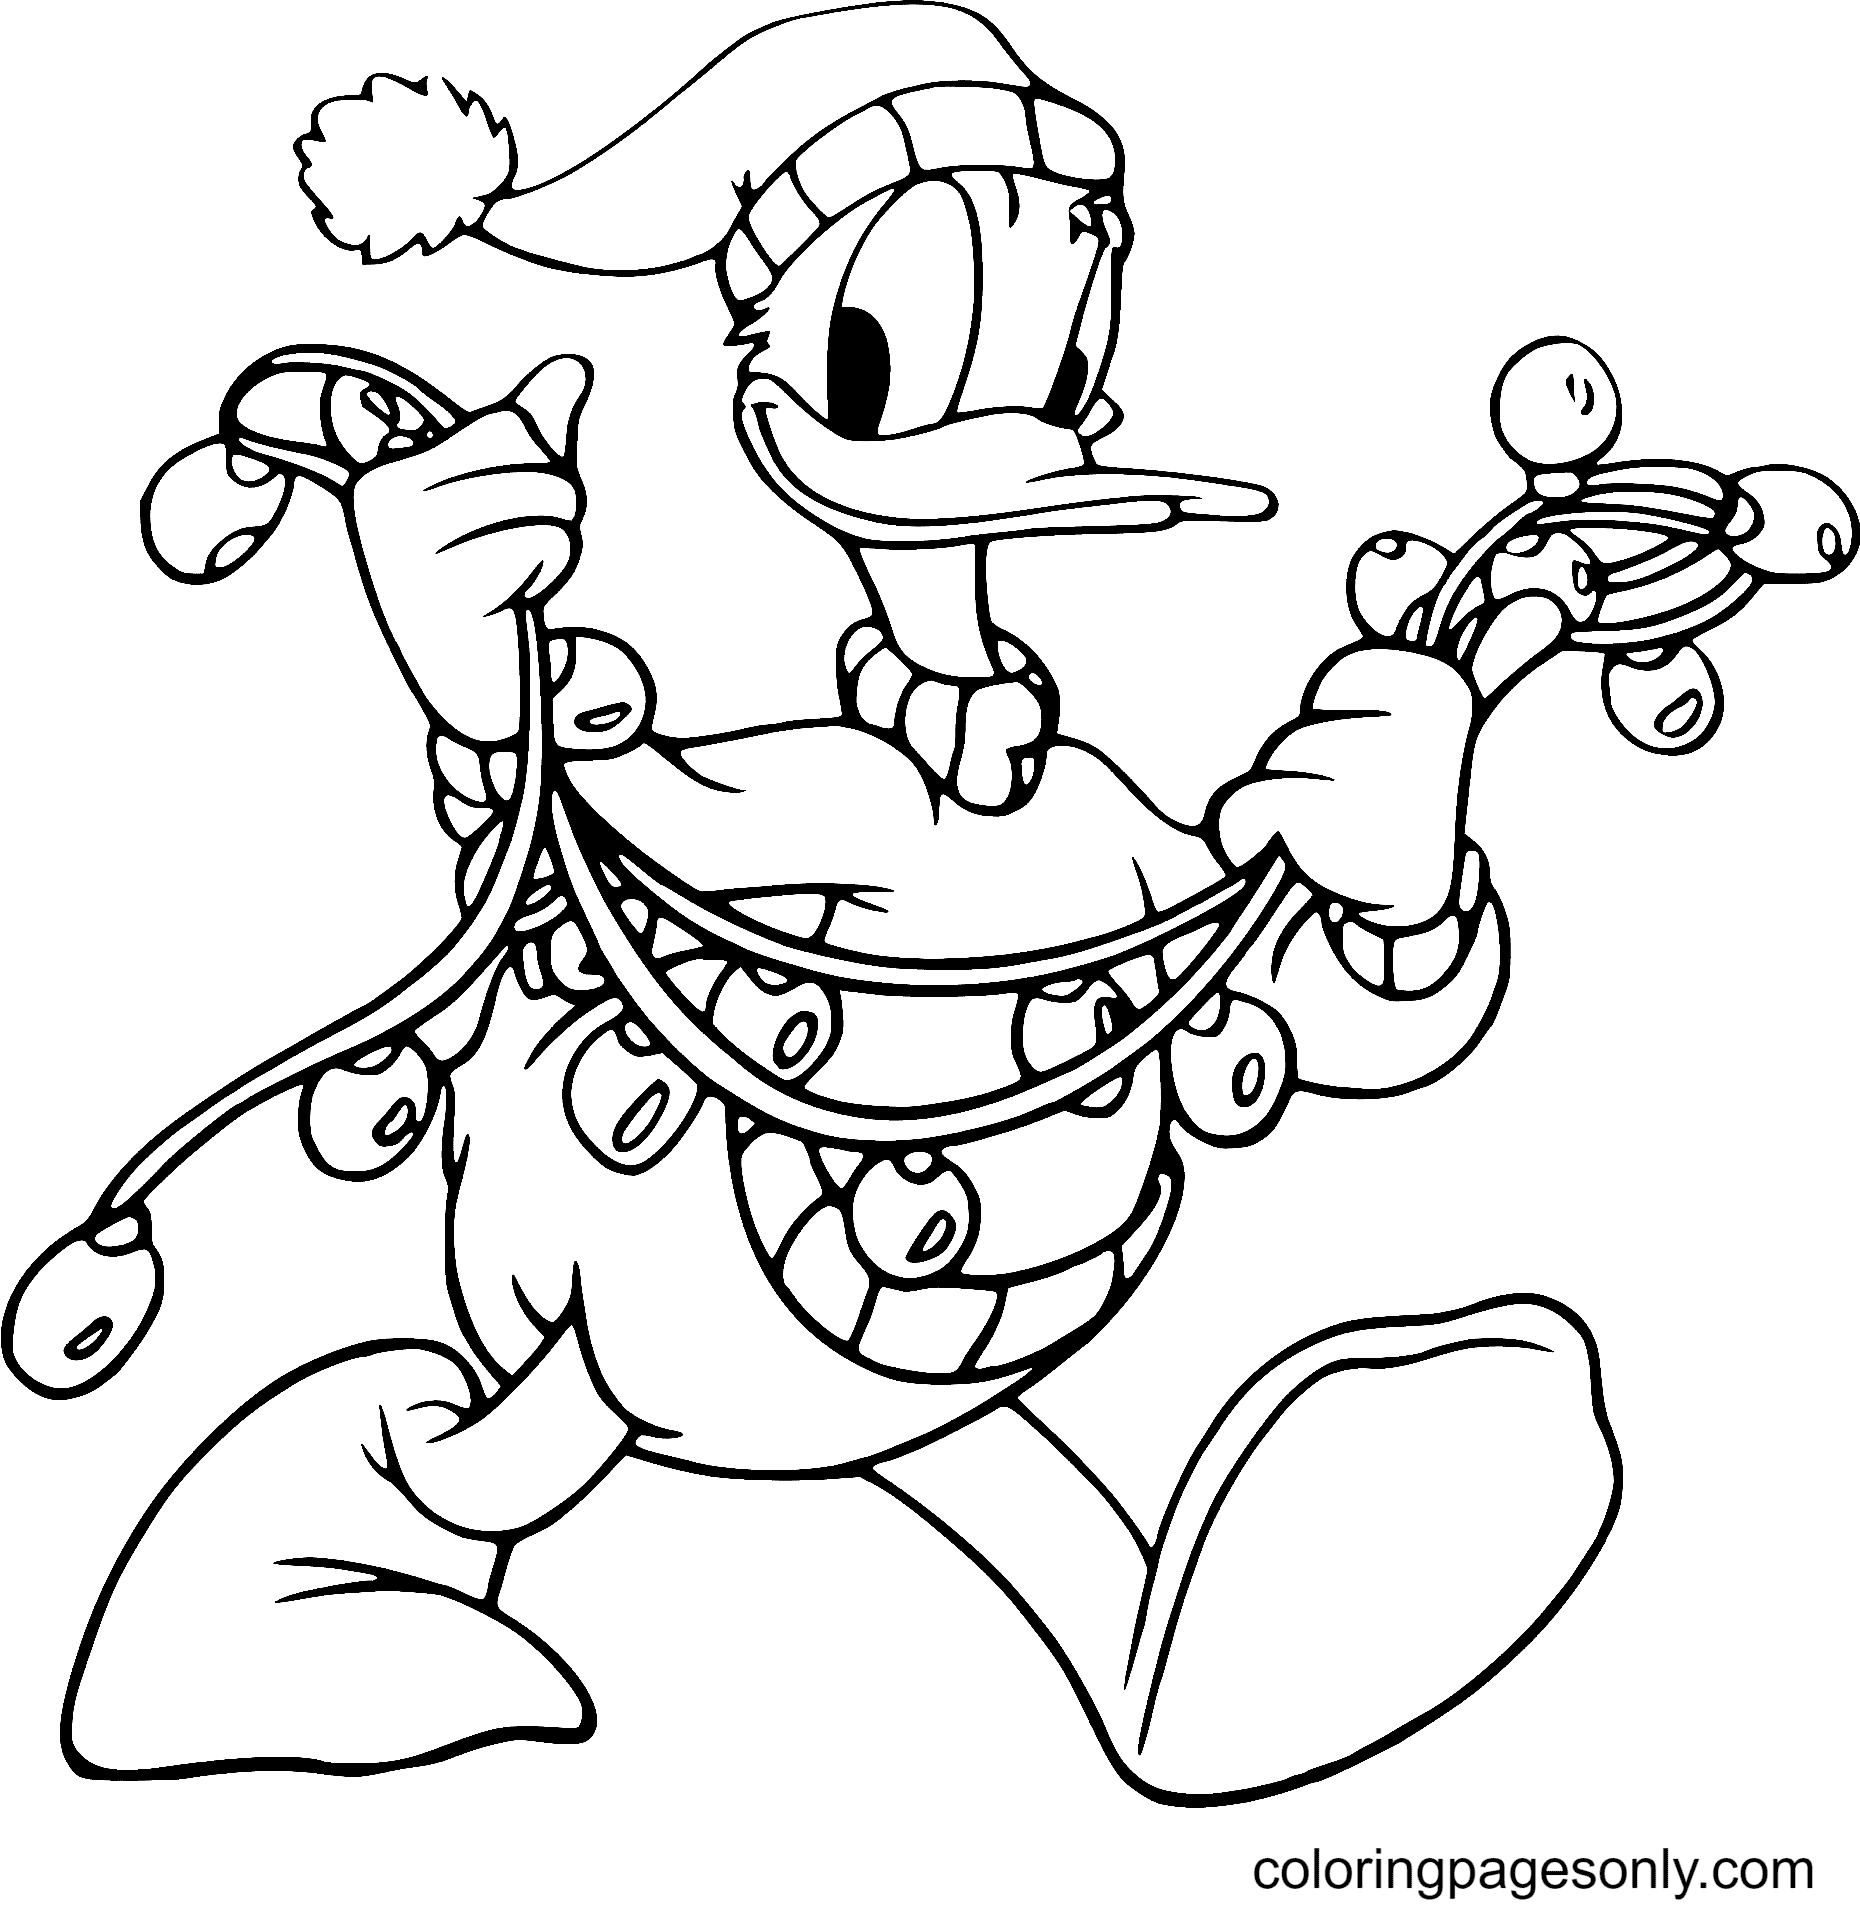 Desenho de luzes de Natal do Pato Donald para colorir